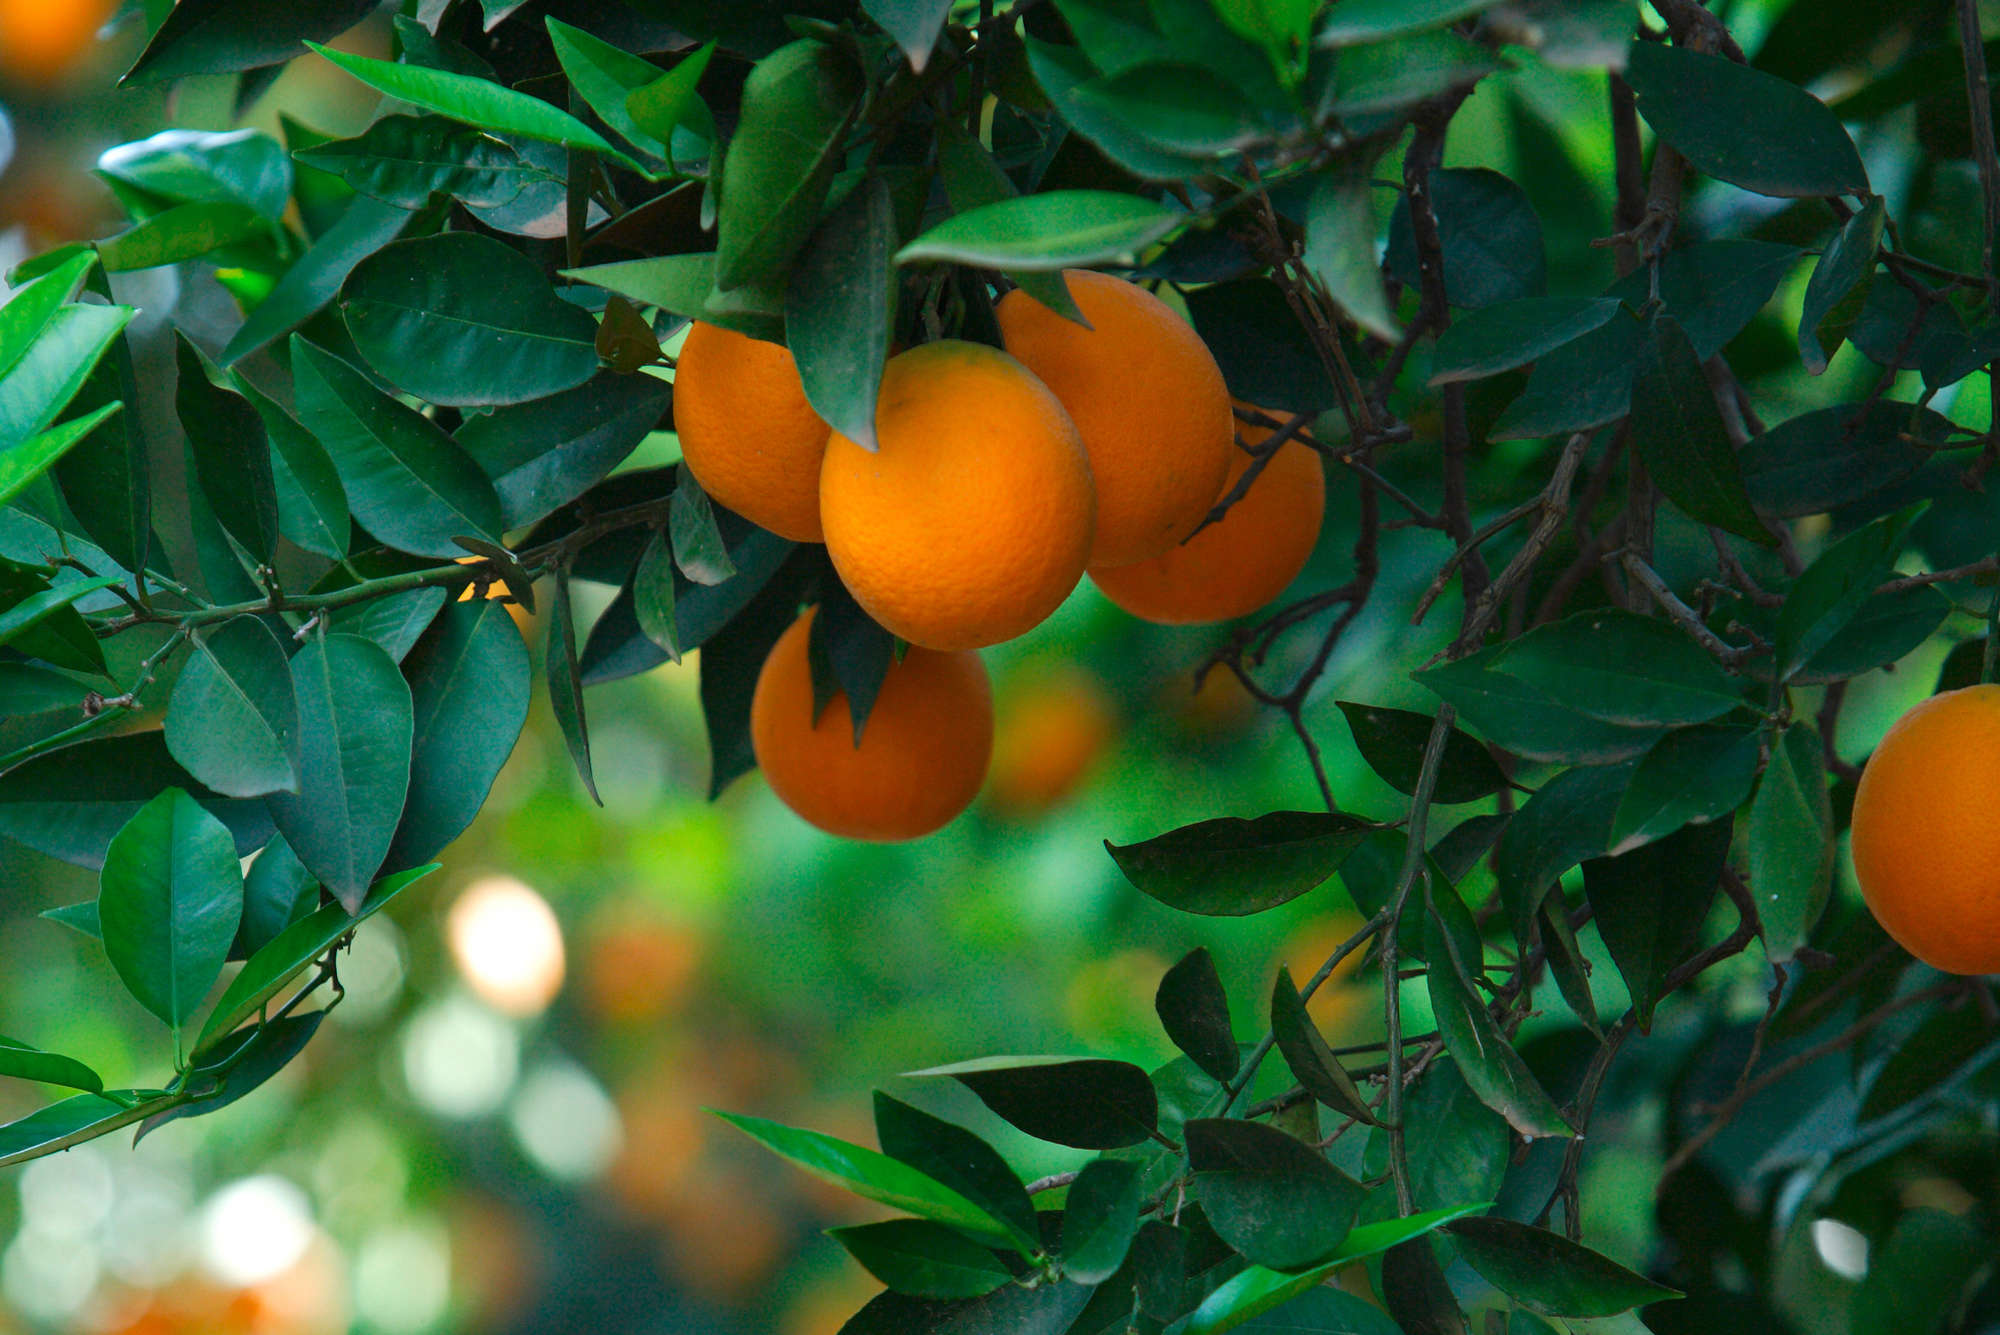             Fototapete Baum mit Früchten – Mattes Glattvlies
        